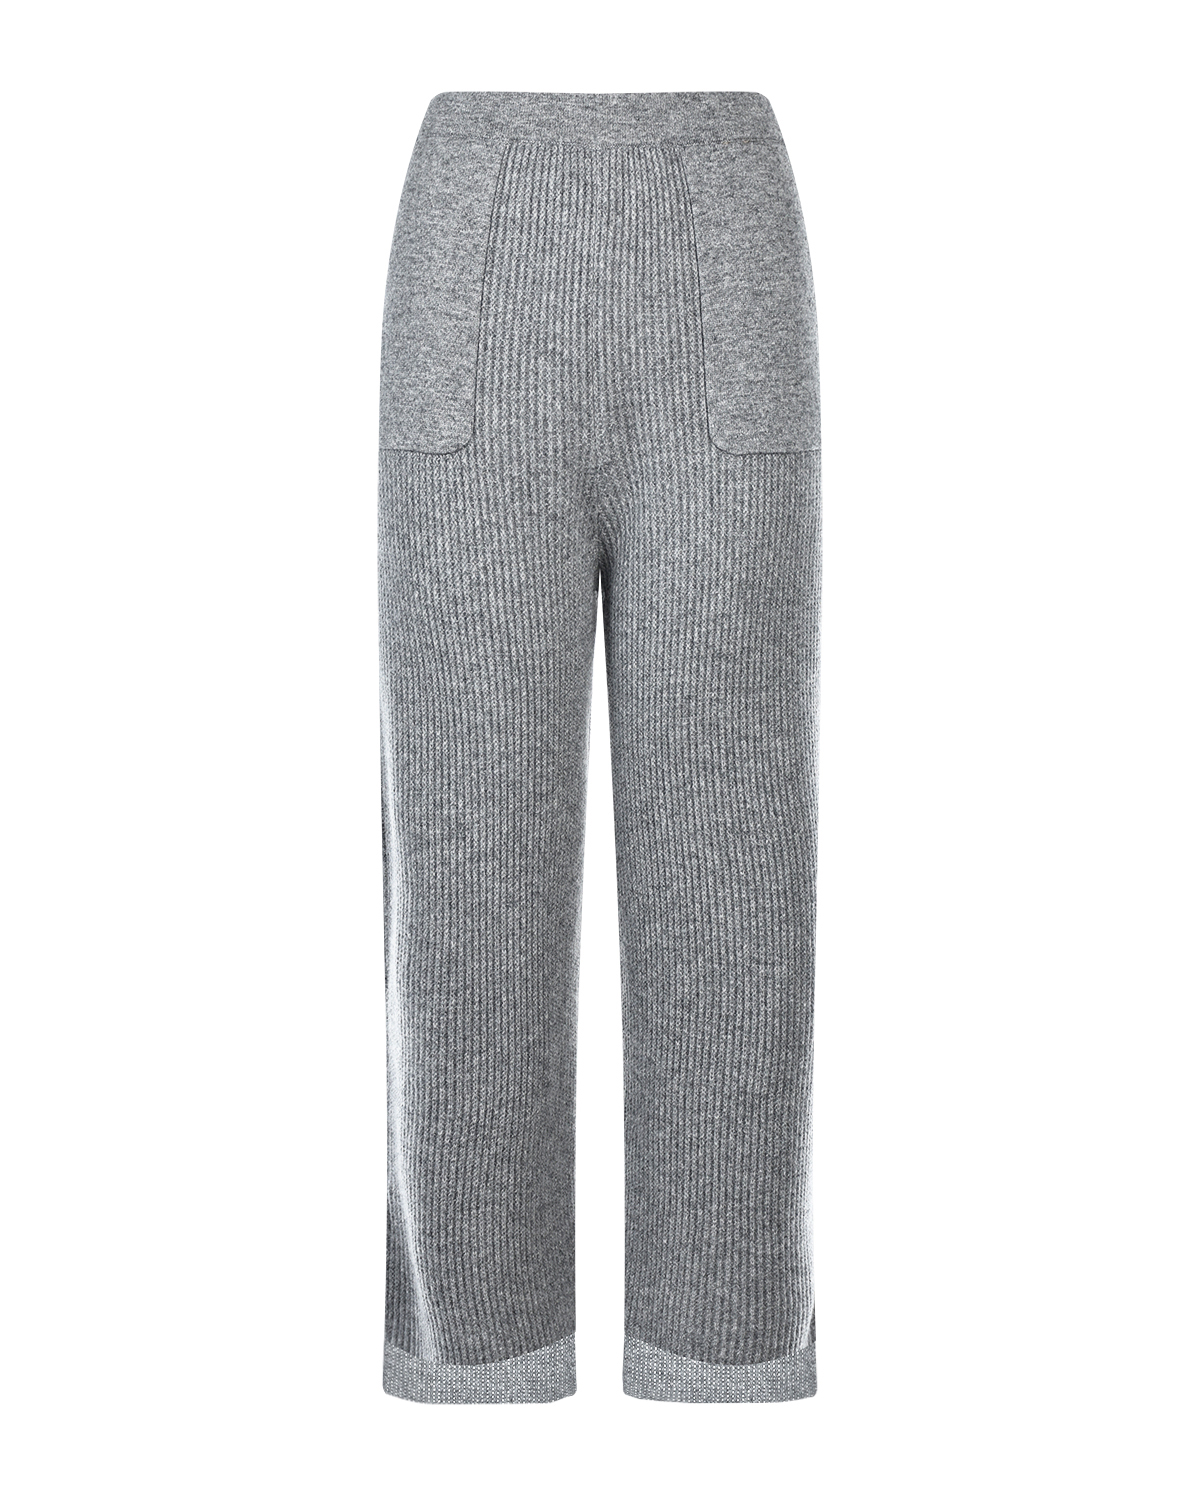 Укороченные кашемировые брюки Allude, размер 38, цвет серый - фото 1